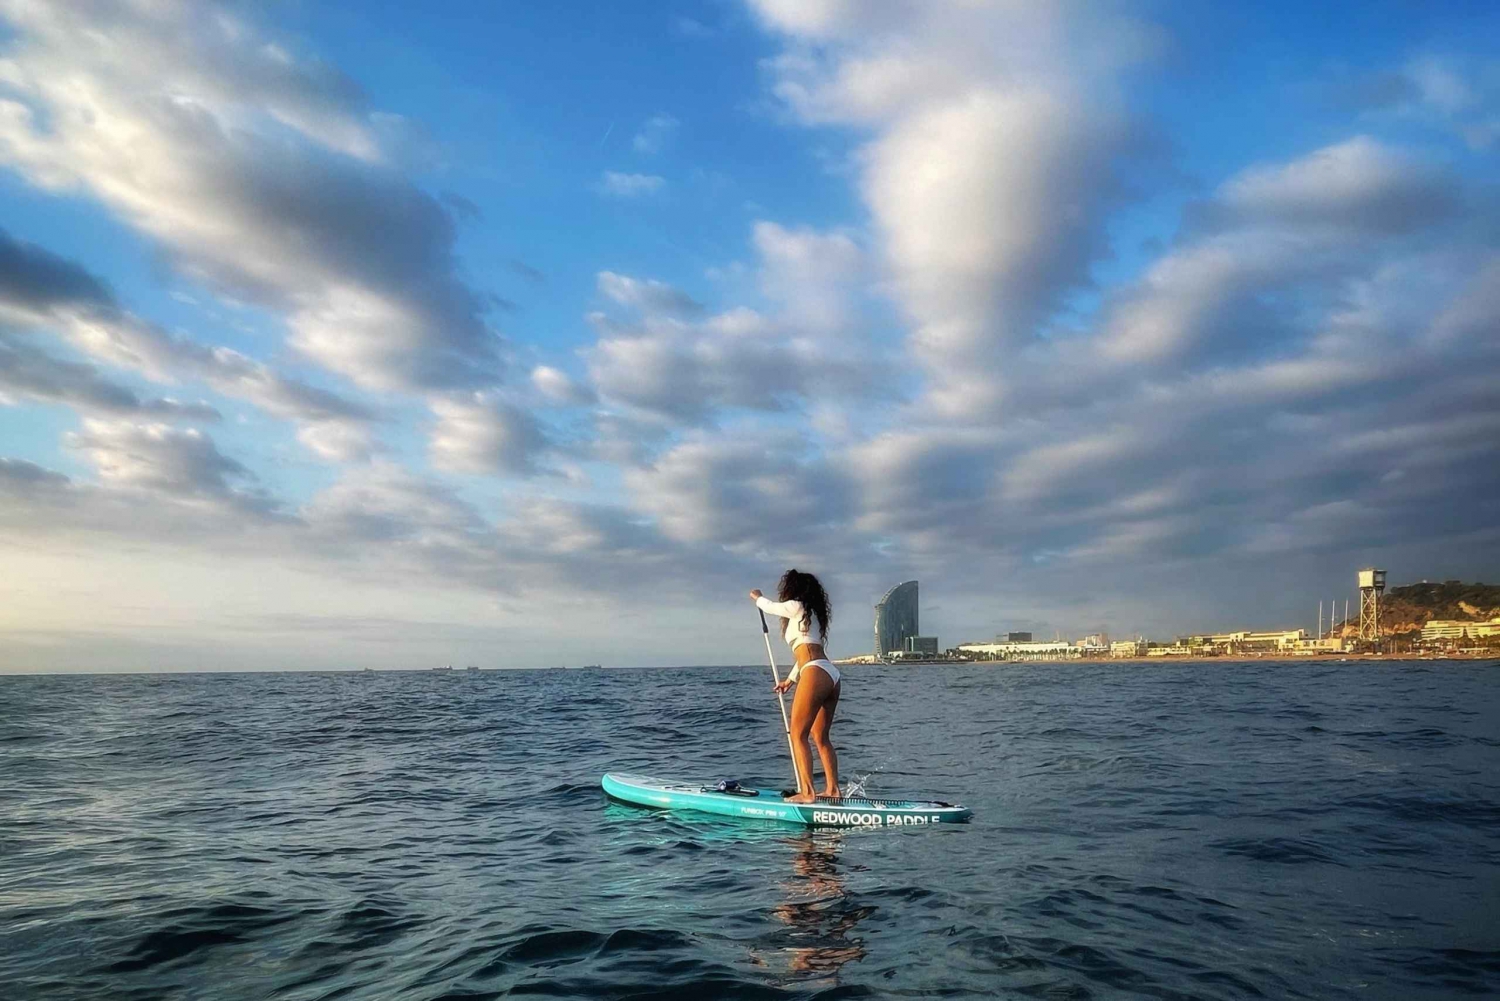 Pôr do sol+paddle surf com música+fotos&vídeos Barceloneta+snack